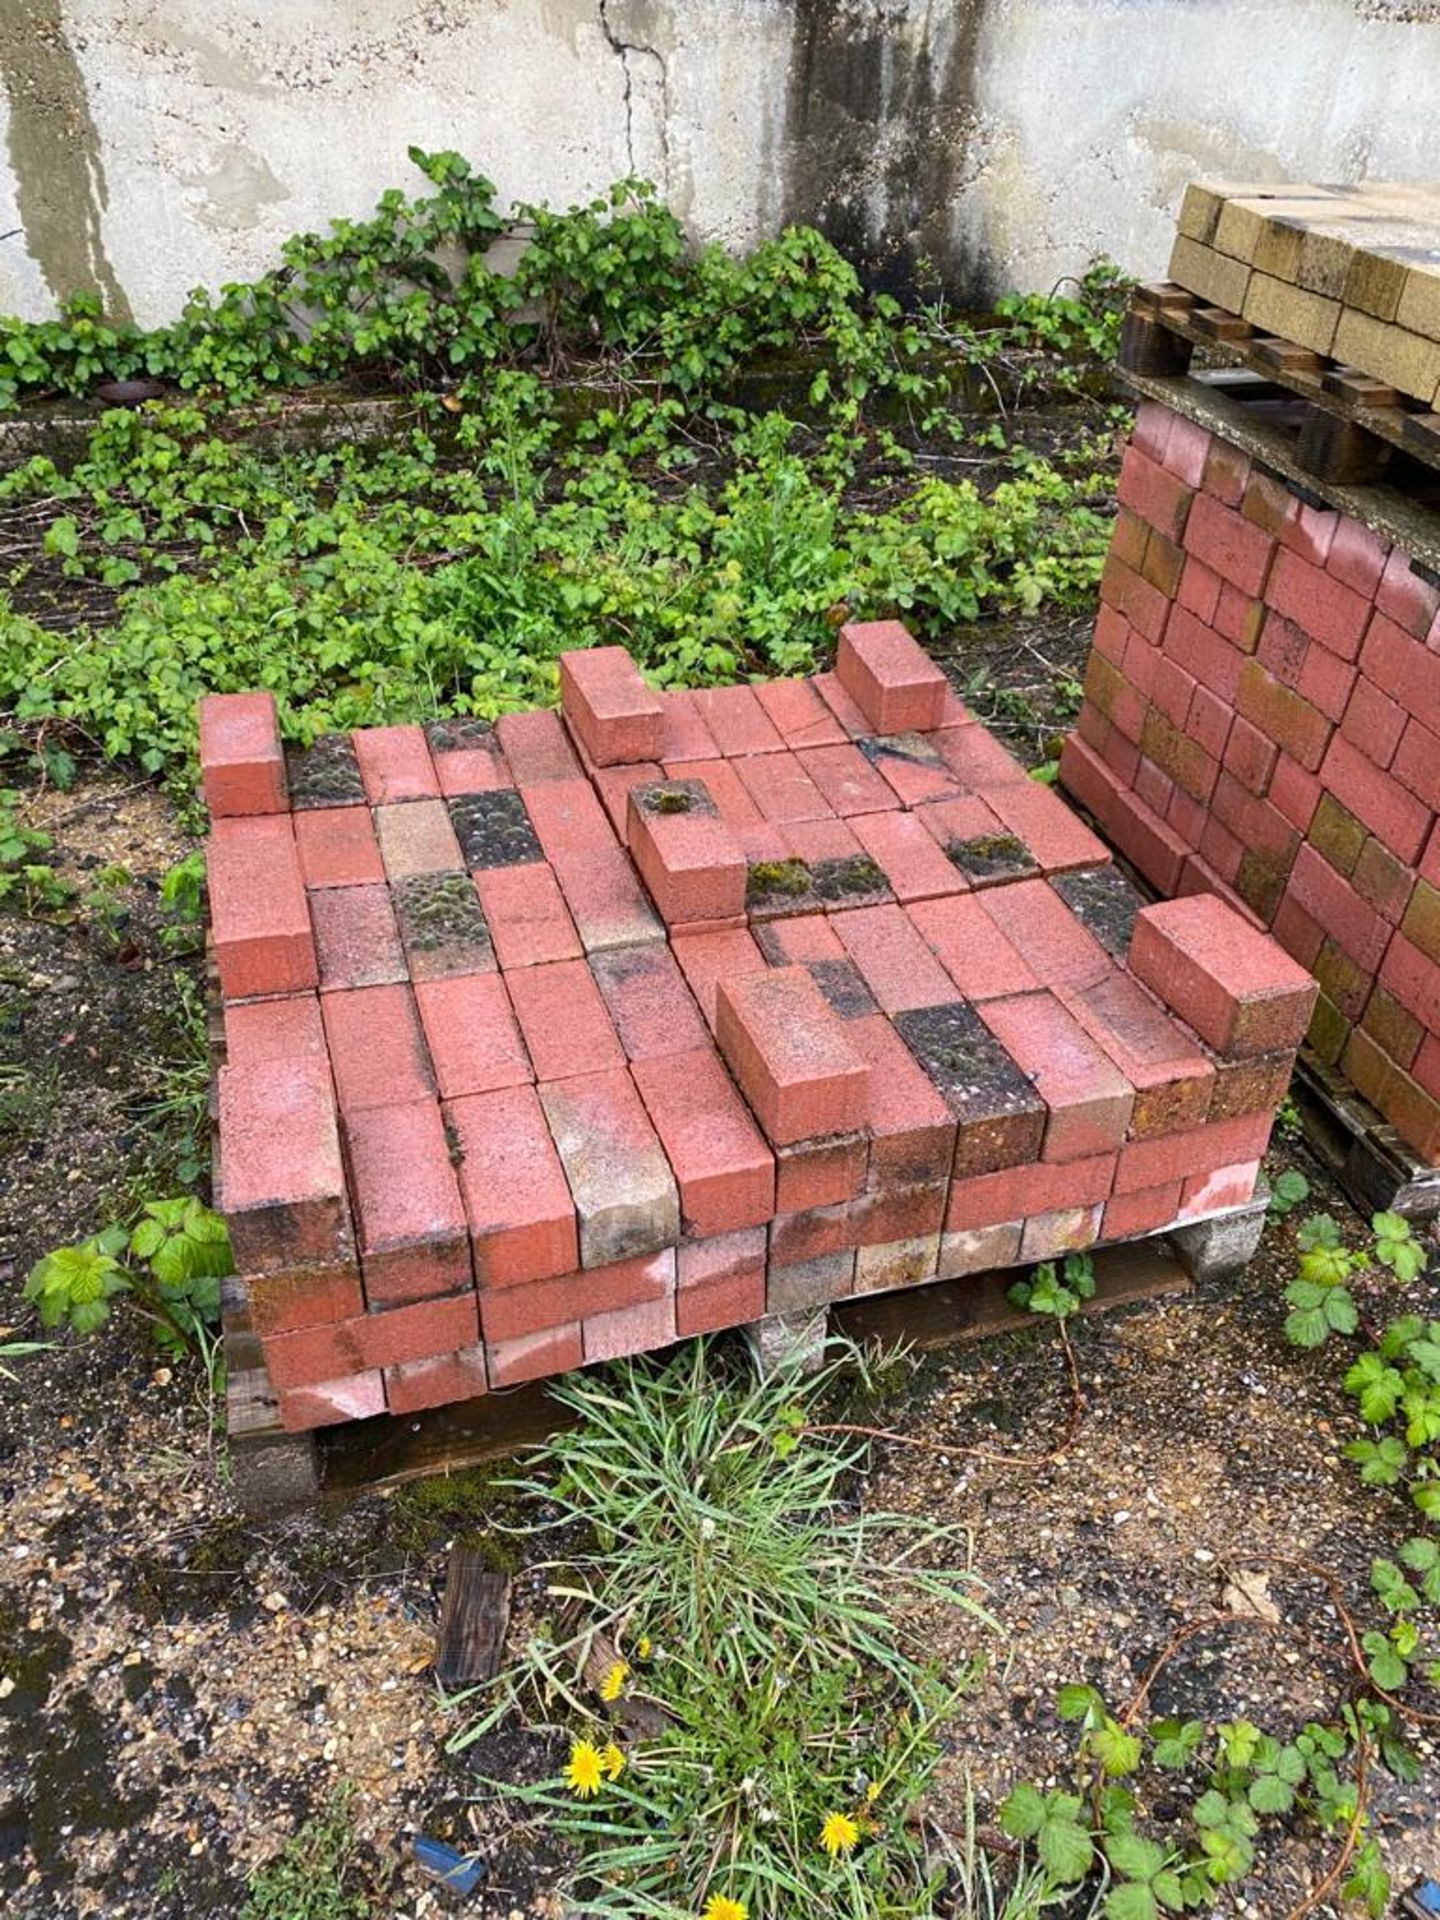 Quantity of bricks